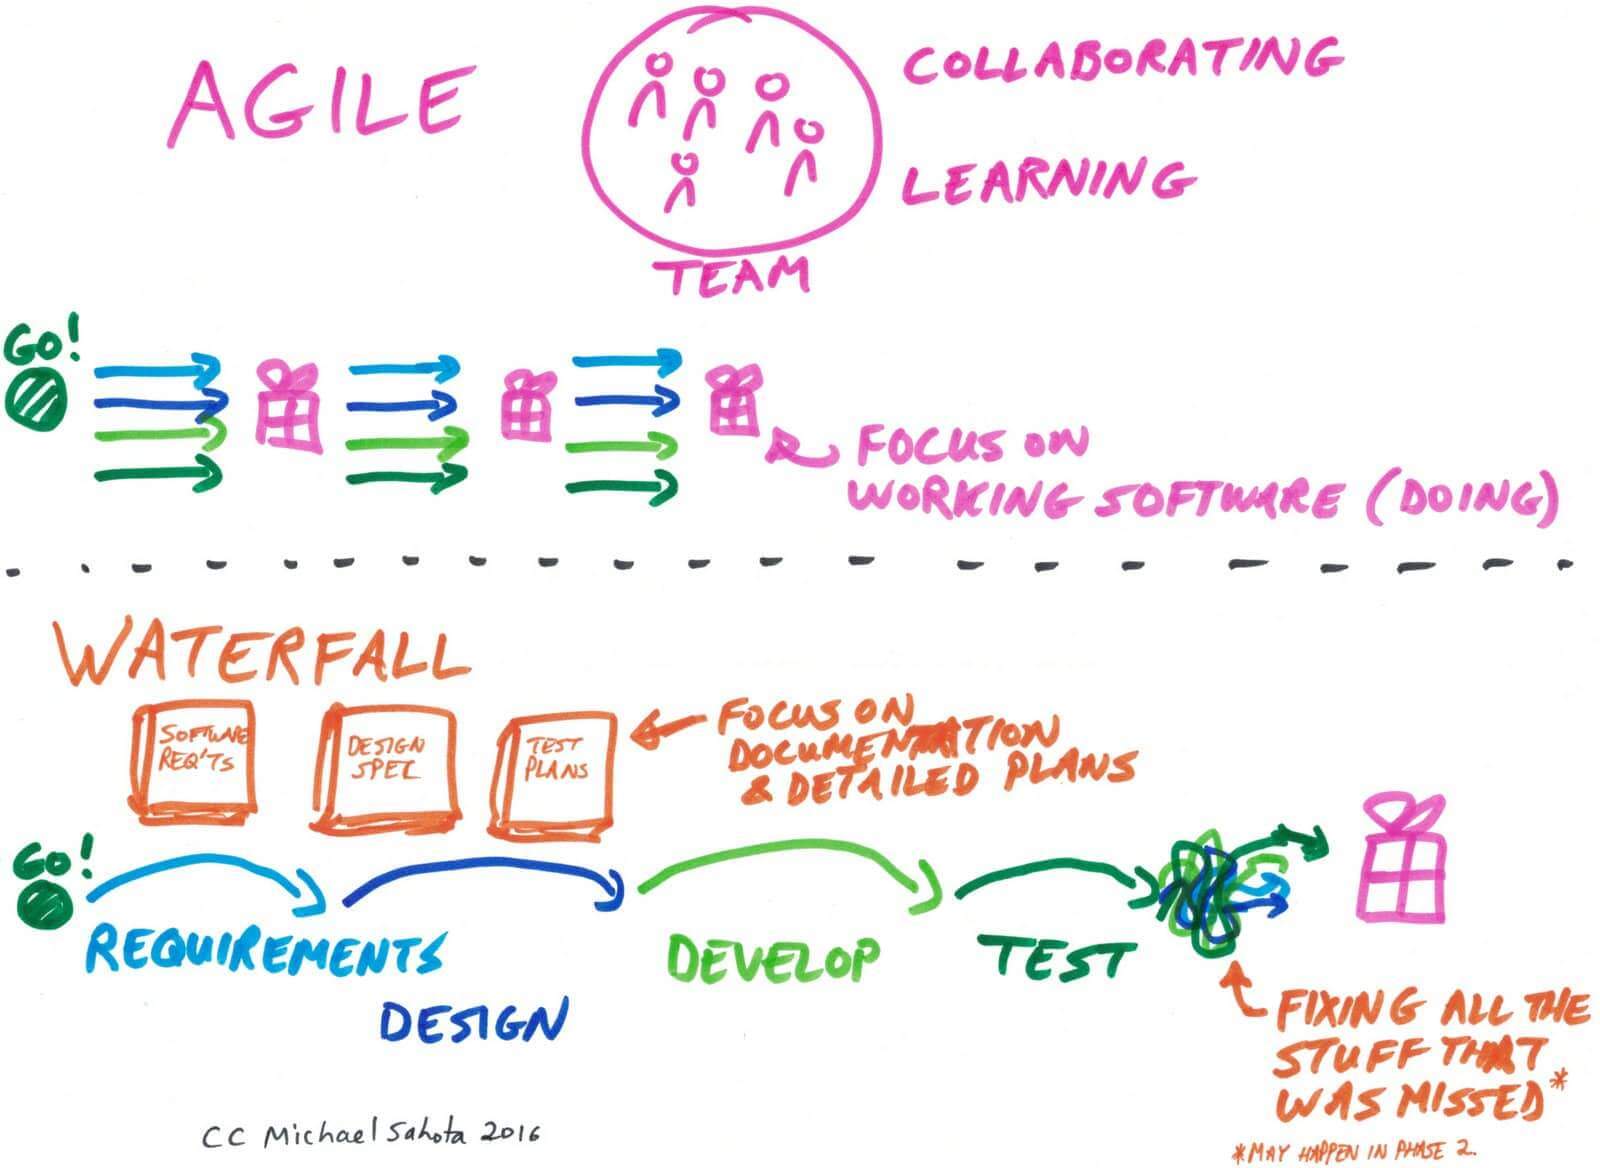 Agile-vs-Waterfall